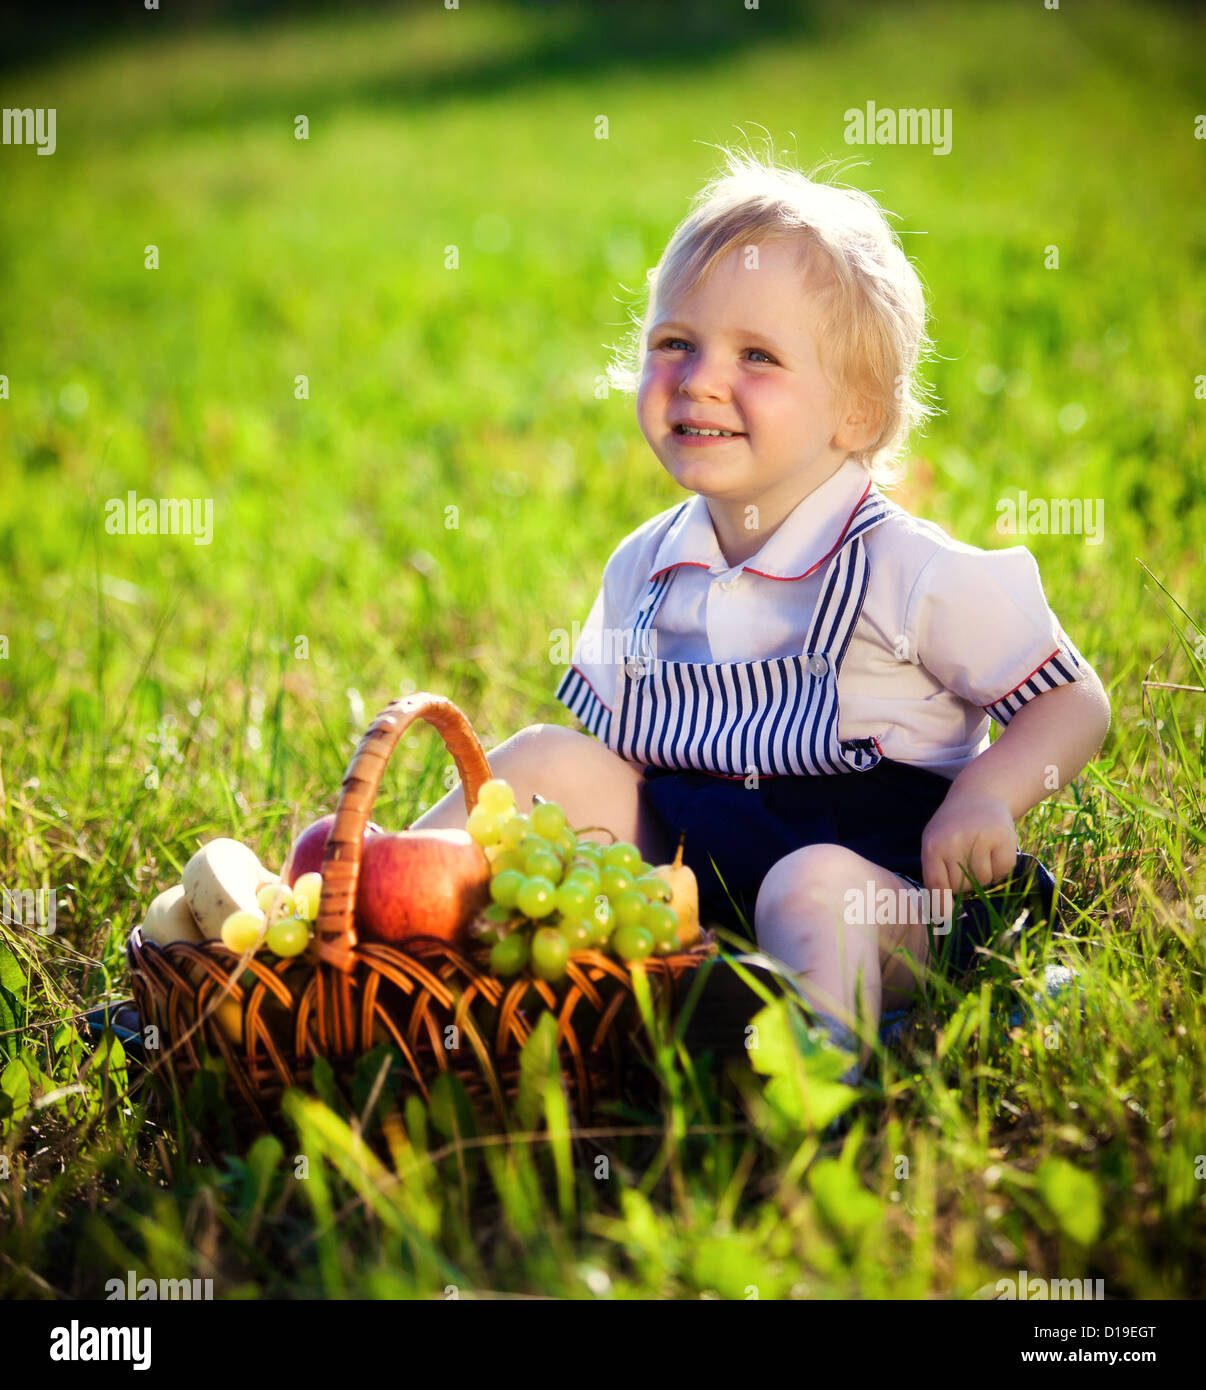 Petit garçon avec un panier de fruits est assis sur une herbe Banque D'Images